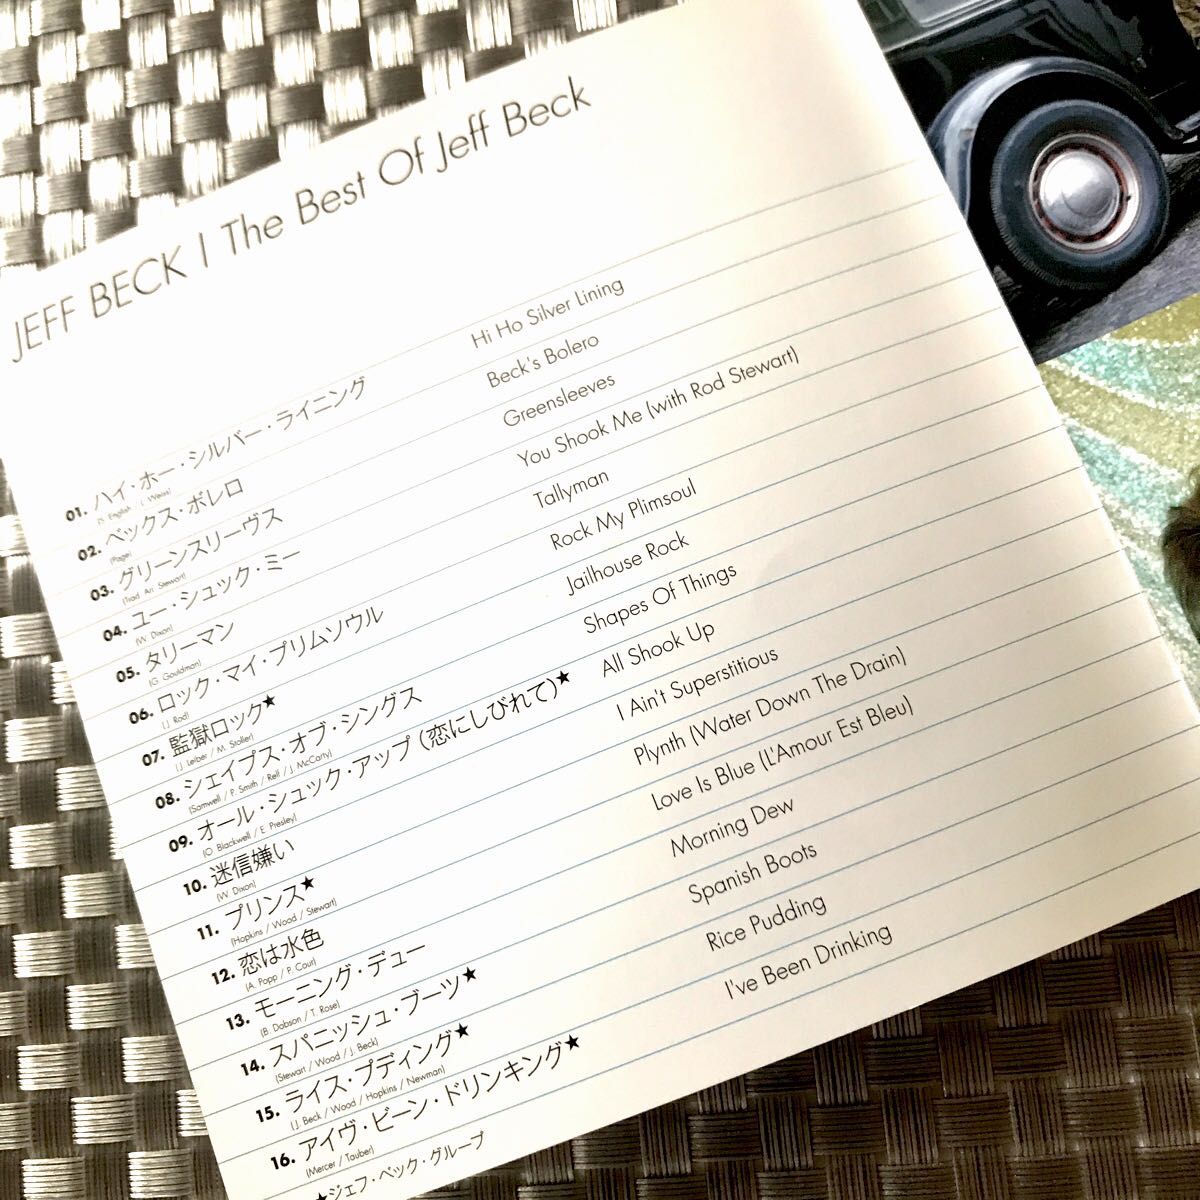 ◆ ジェフベック/《THE BEST OF Jeff Beck》(国内企画盤･CD)